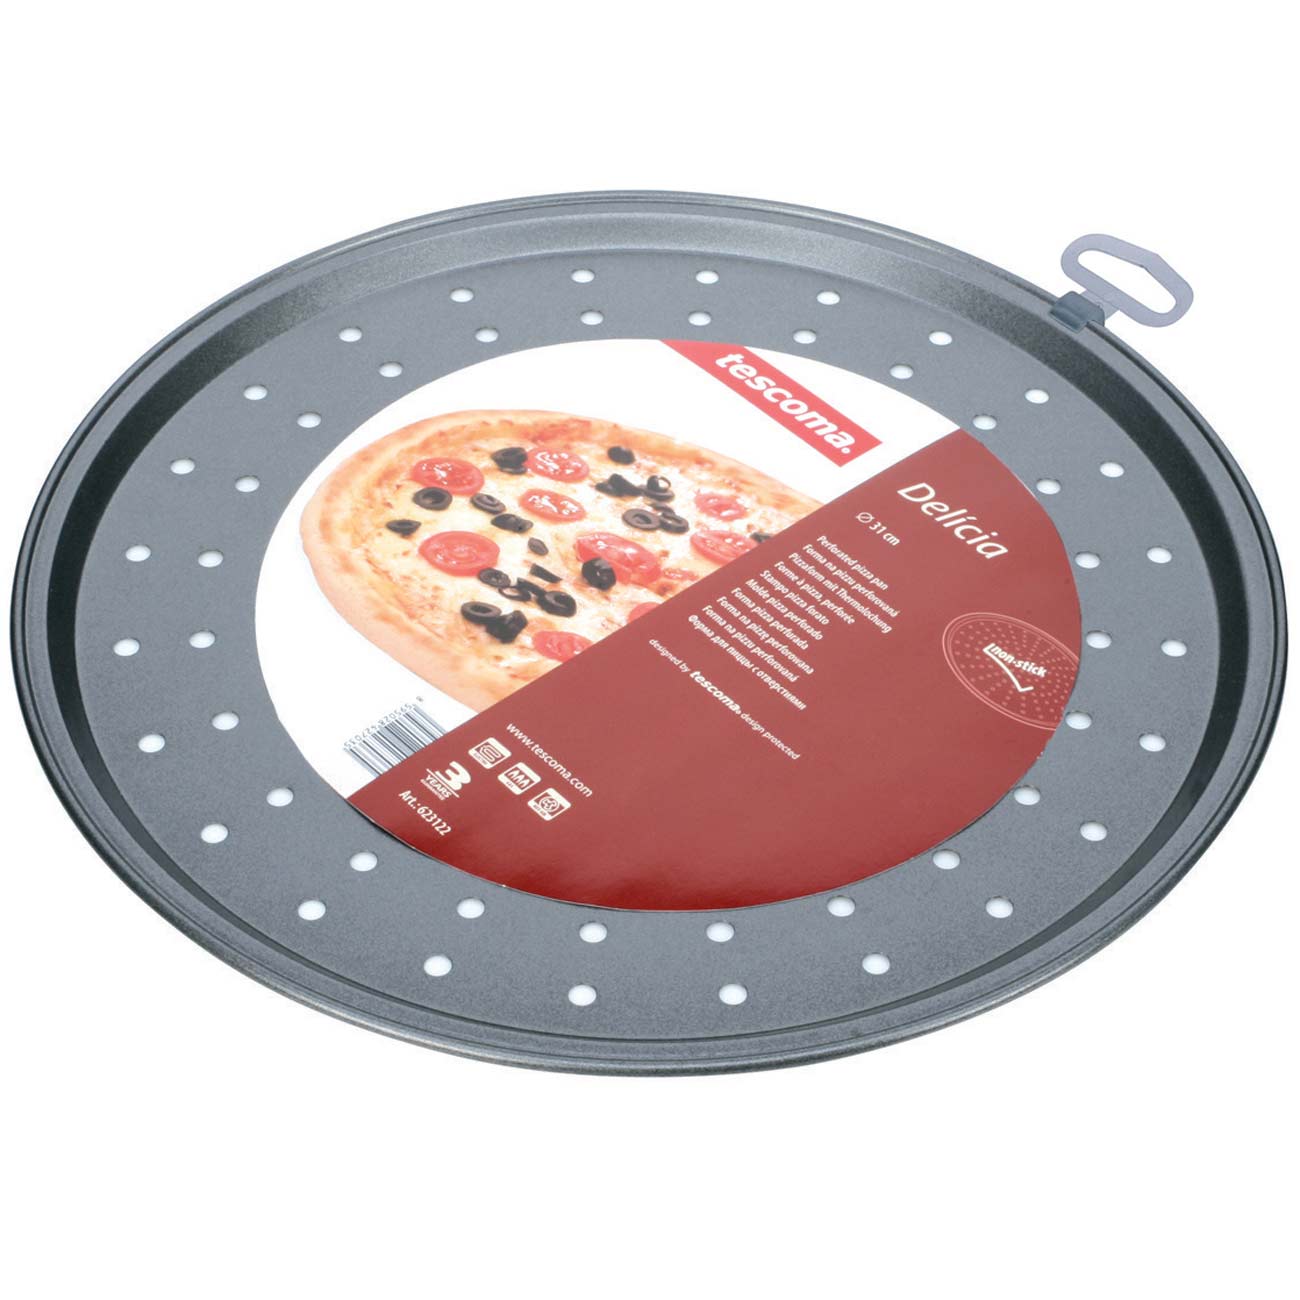 форма для пиццы с дырочками как пользоваться в духовке фото 91